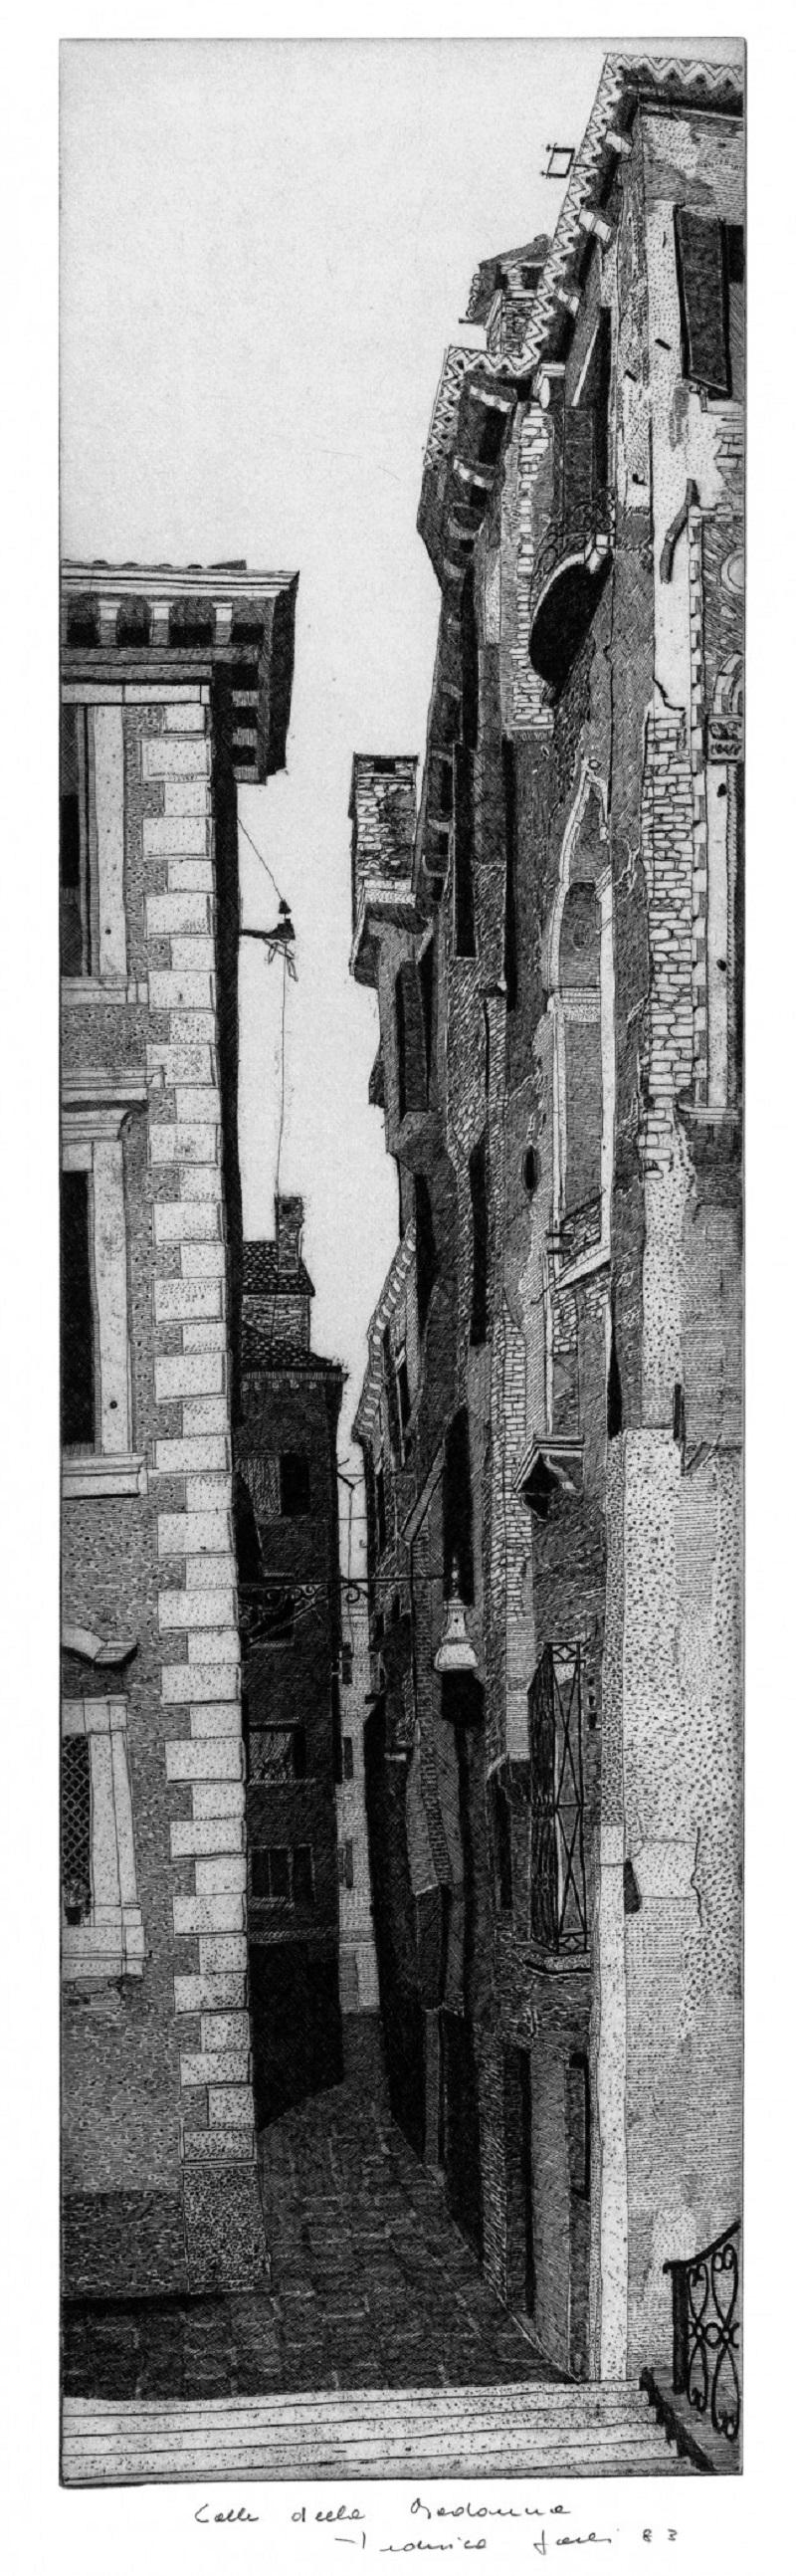 Venezia, Calle della Madonna, 1983, rif. 516
Plattenrand mm mm 692 x 195

Original-Radierung, signierte und nummerierte limitierte Auflage von 90 Stück. 

Die Radierung wurde letztes Jahr im Rahmen der kritischen Retrospektive ausgestellt, die die